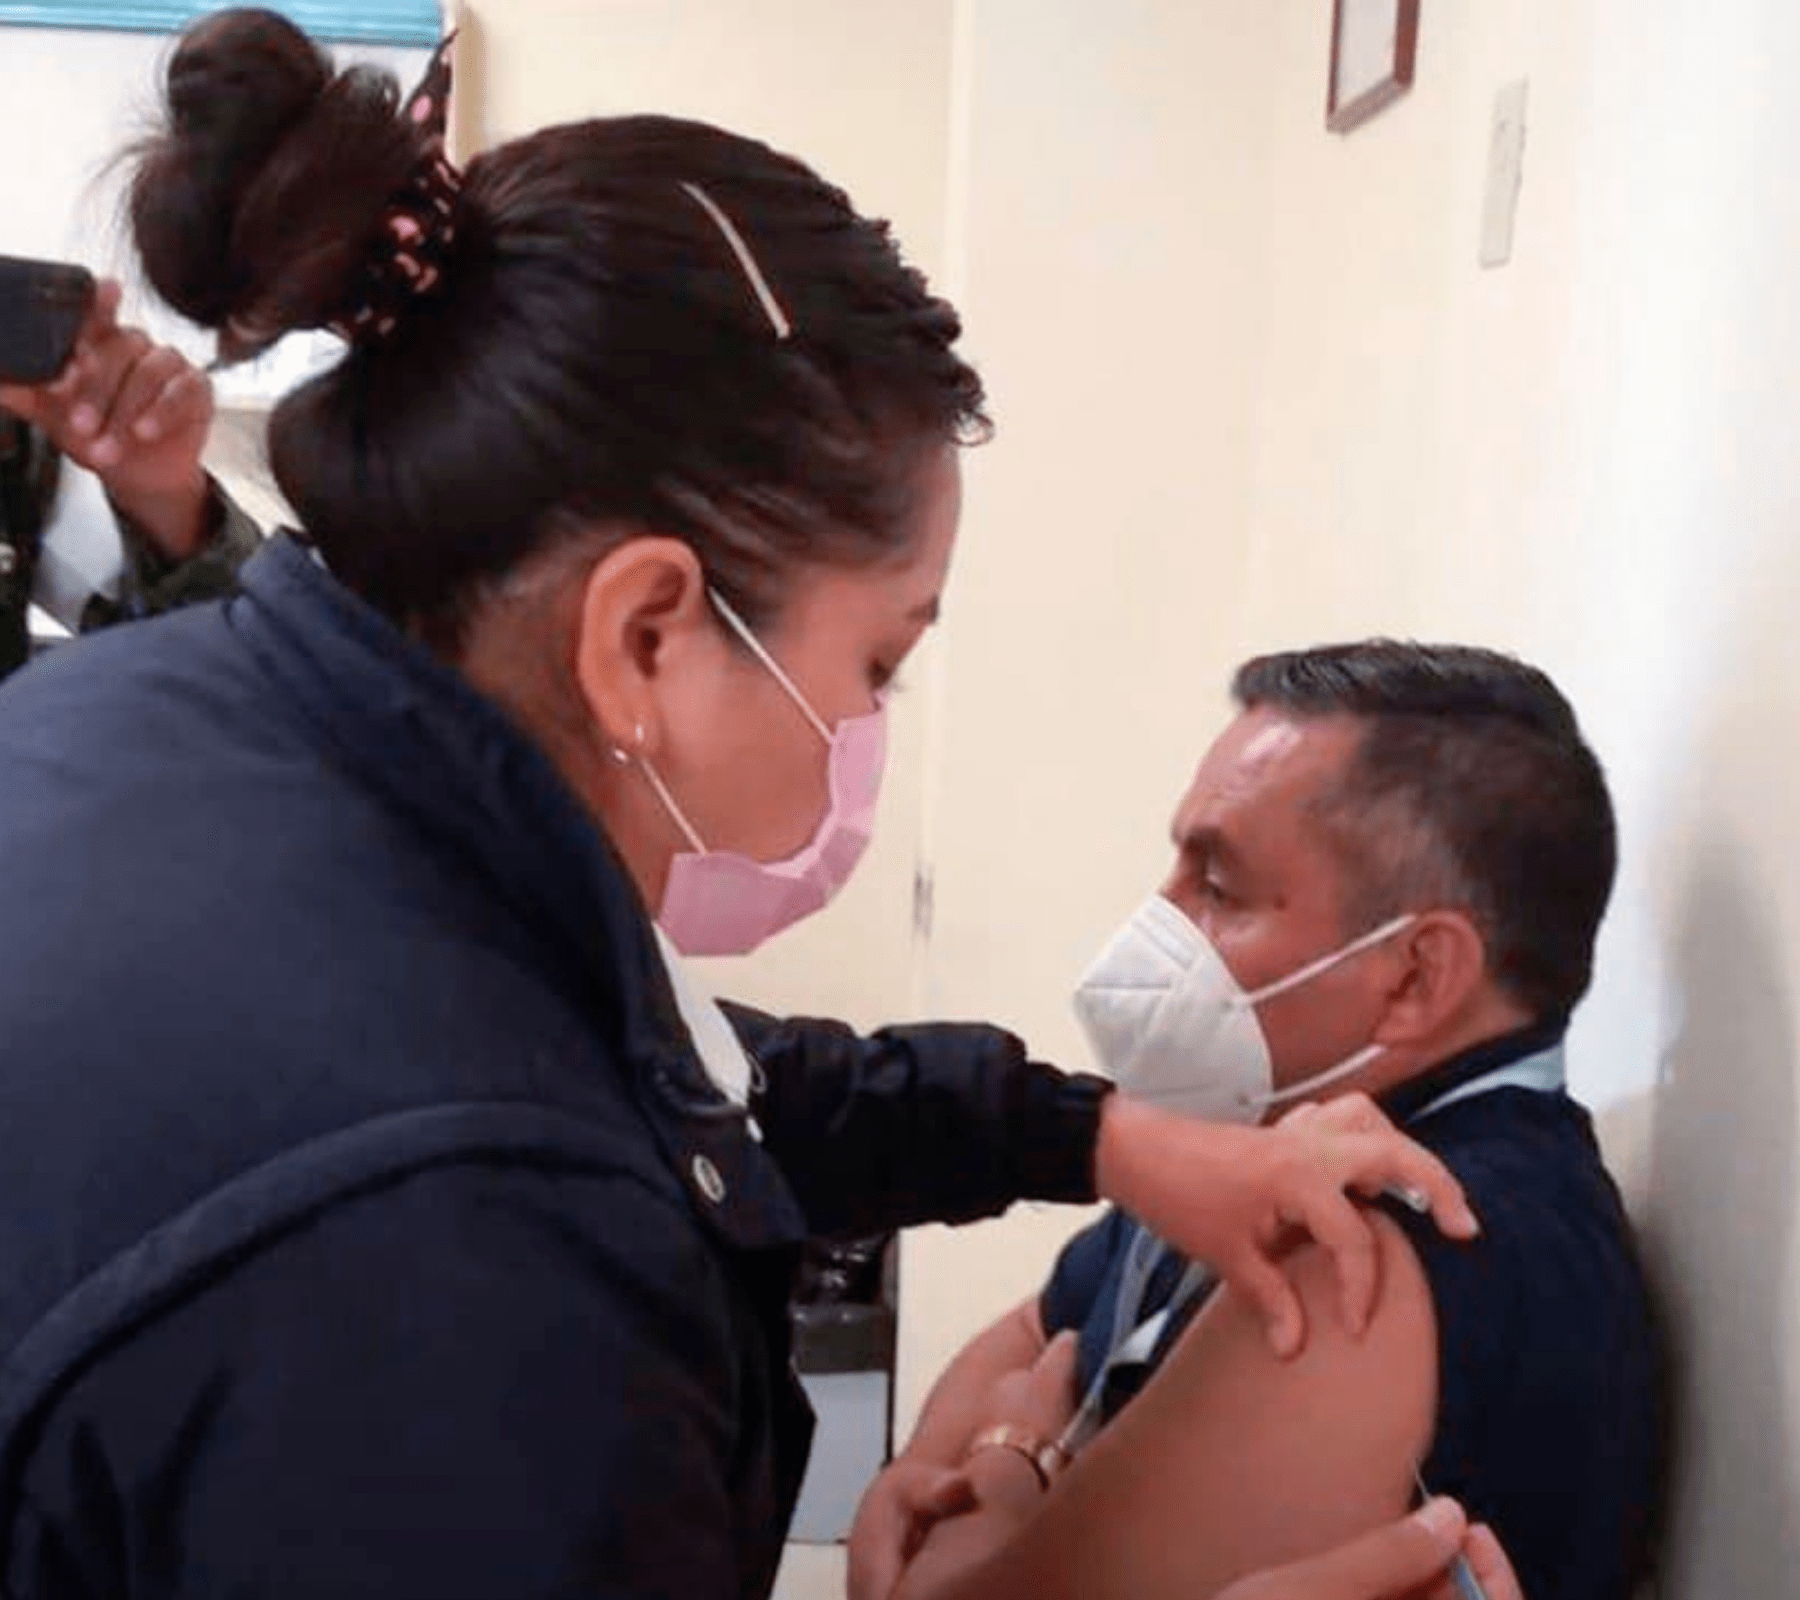 Llegarán 39 mil vacunas contra covid a Tehuacán y Tlacotepec